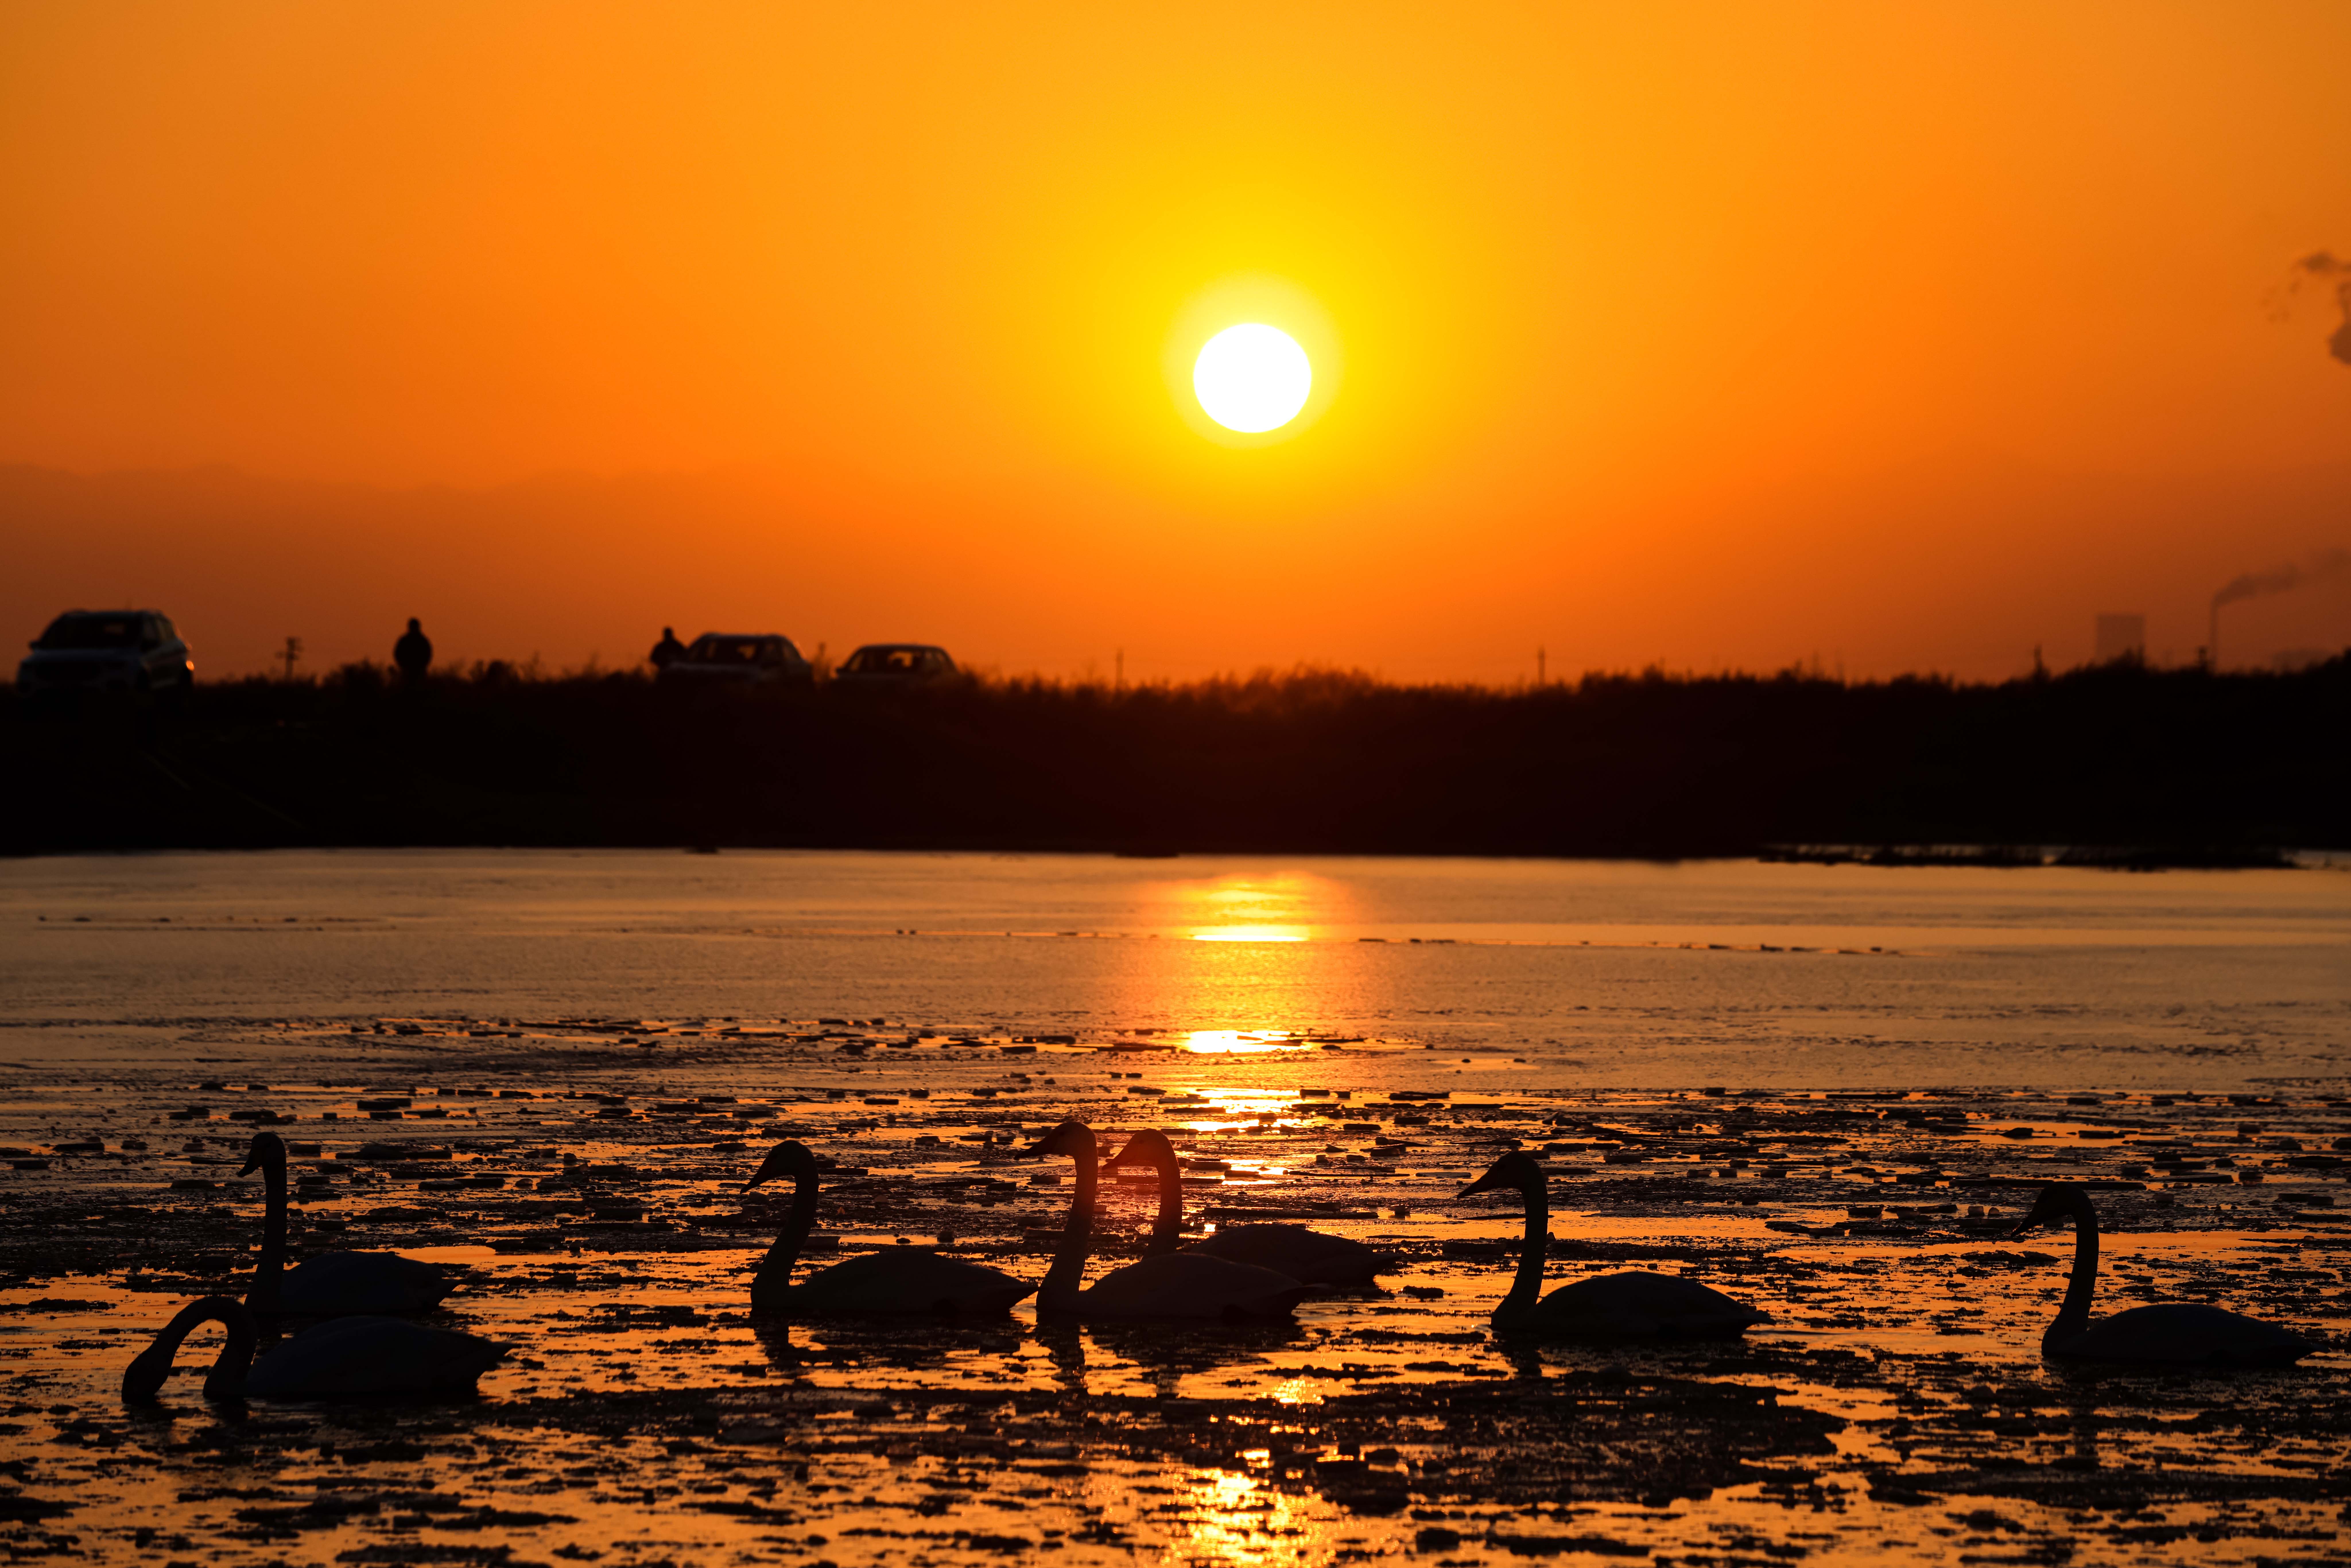 鳥翔鹽湖 水城共融鹽湖生態濕地水豐草盛，風景優美，吸引越來越多的鳥類常年繁衍棲息。